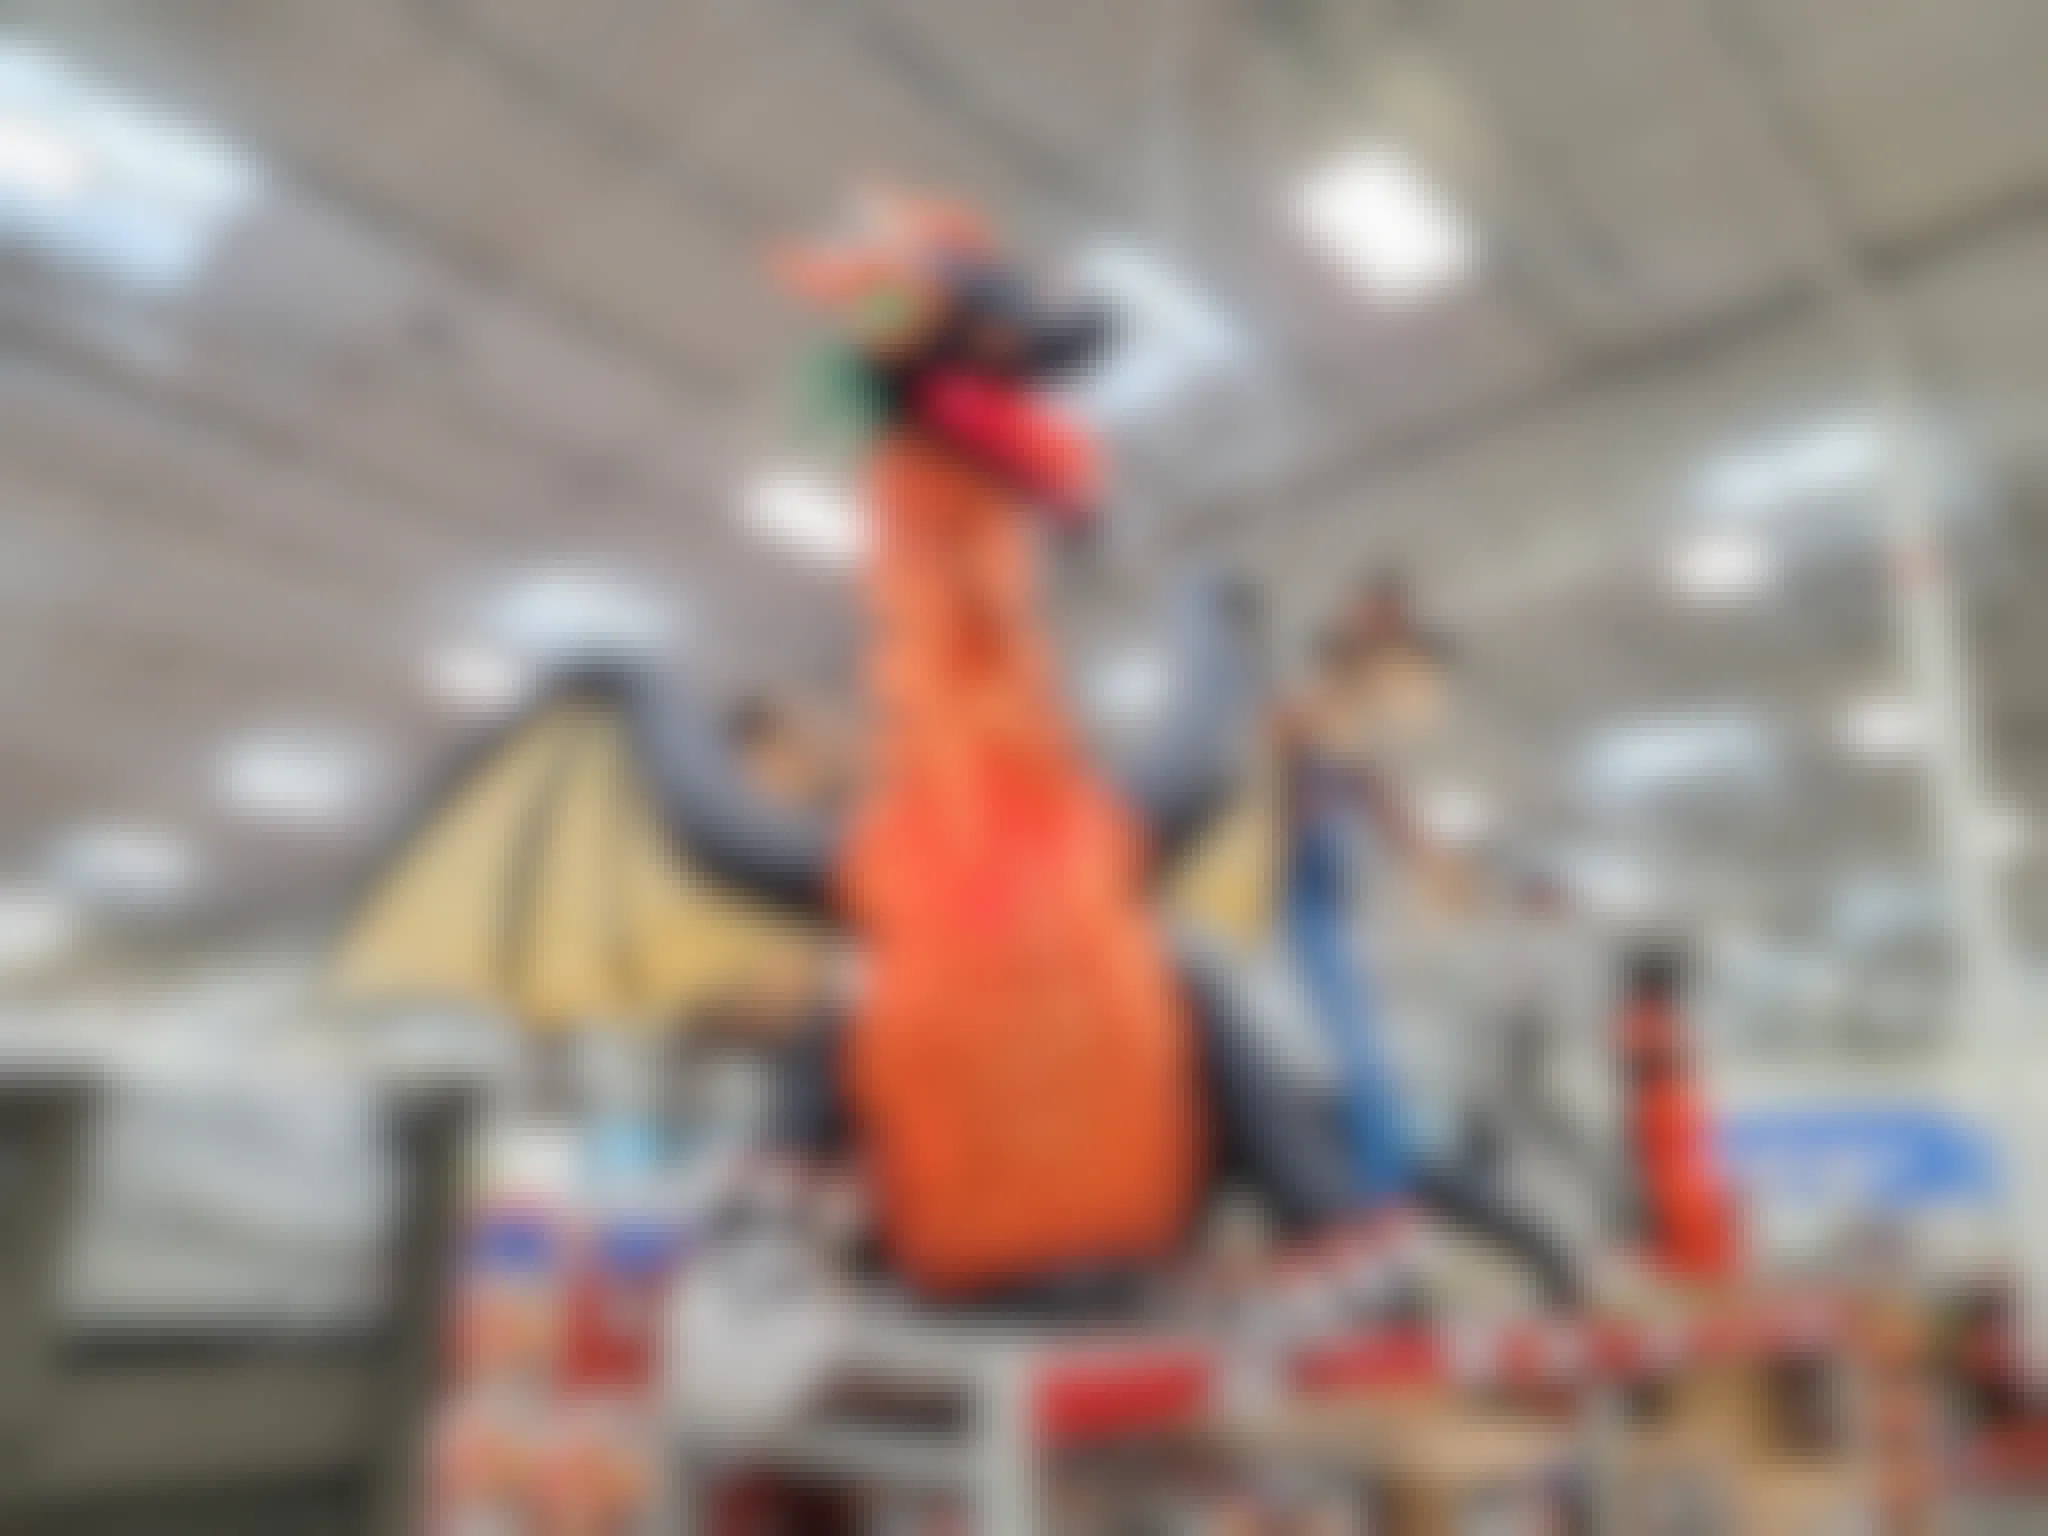 sams club inflatable dragon on display